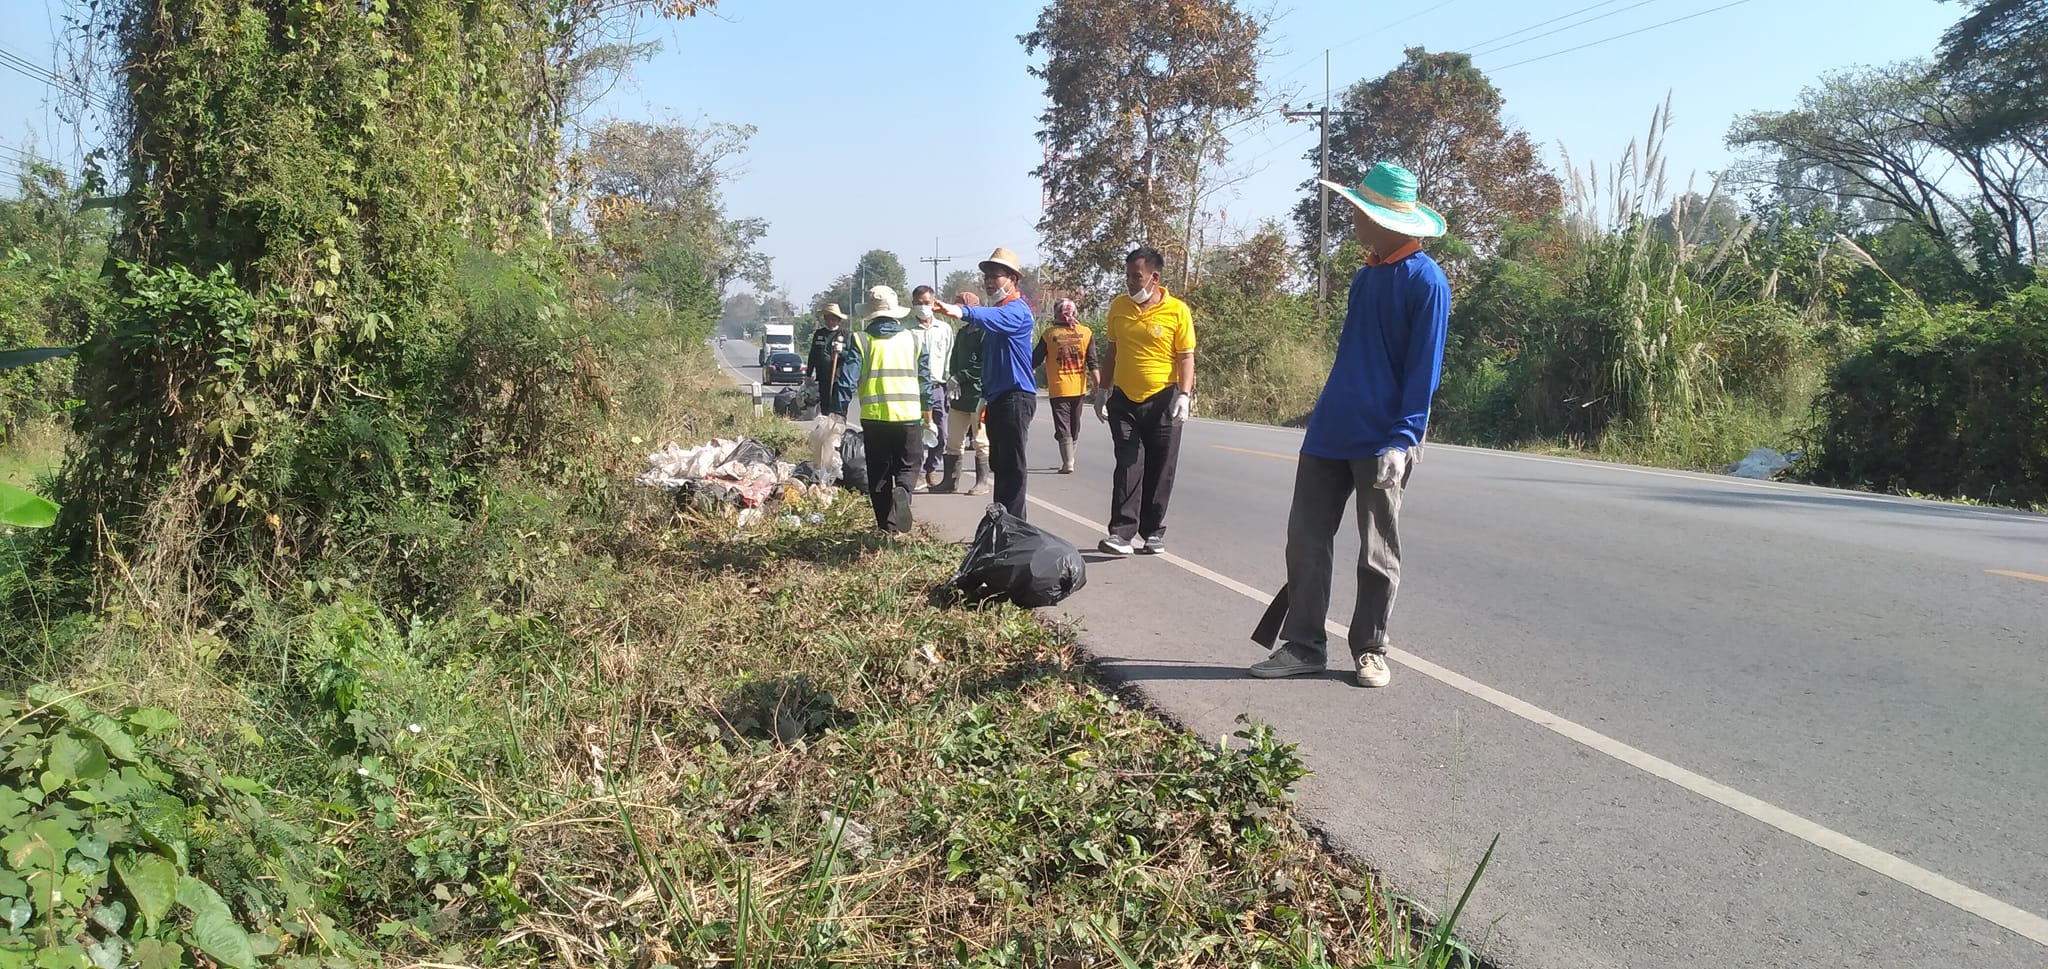 องค์การบริหารส่วนตำบลหนองไฮ ได้ทำกิจกรรมทำความสะอาด เก็บขยะตามถนนสายหลัก ในเขตตำบลหนองไฮ